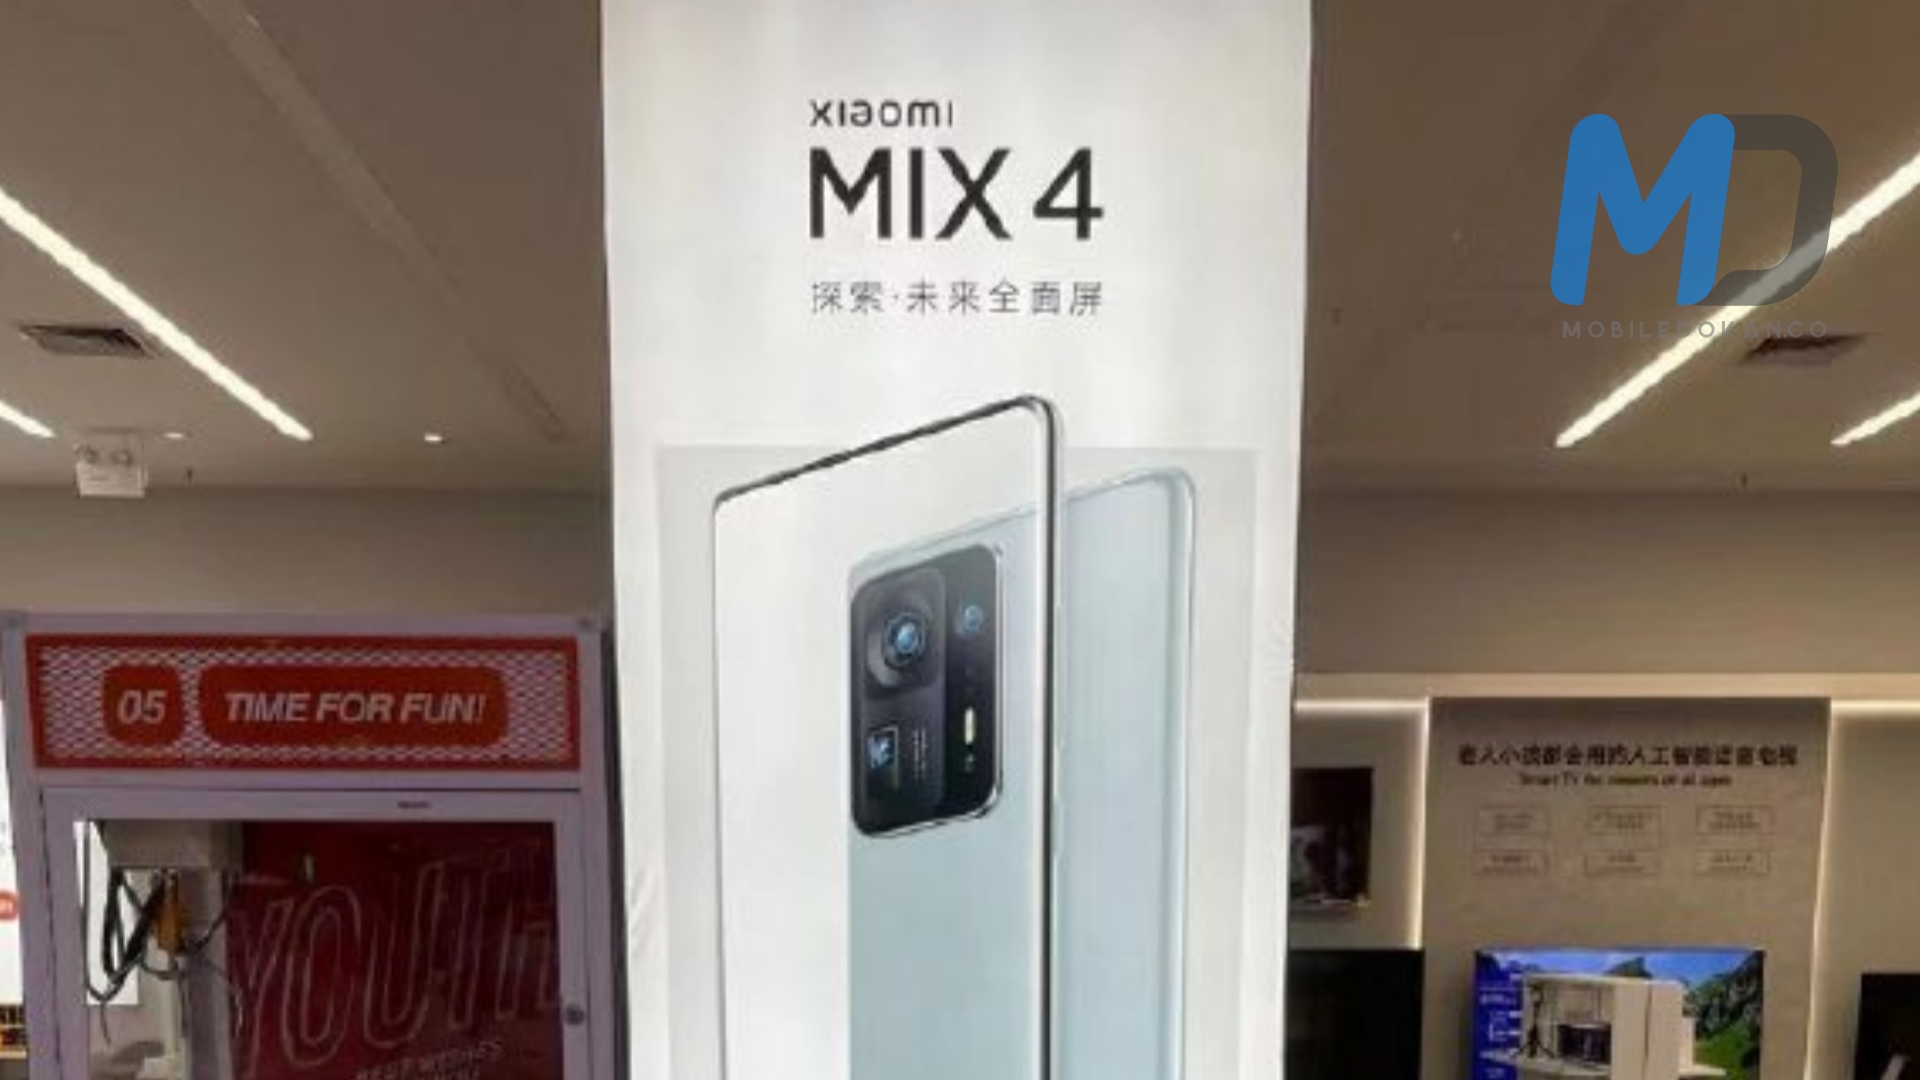 Xiaomi Mi MIX 4 design leaked through promotional poster